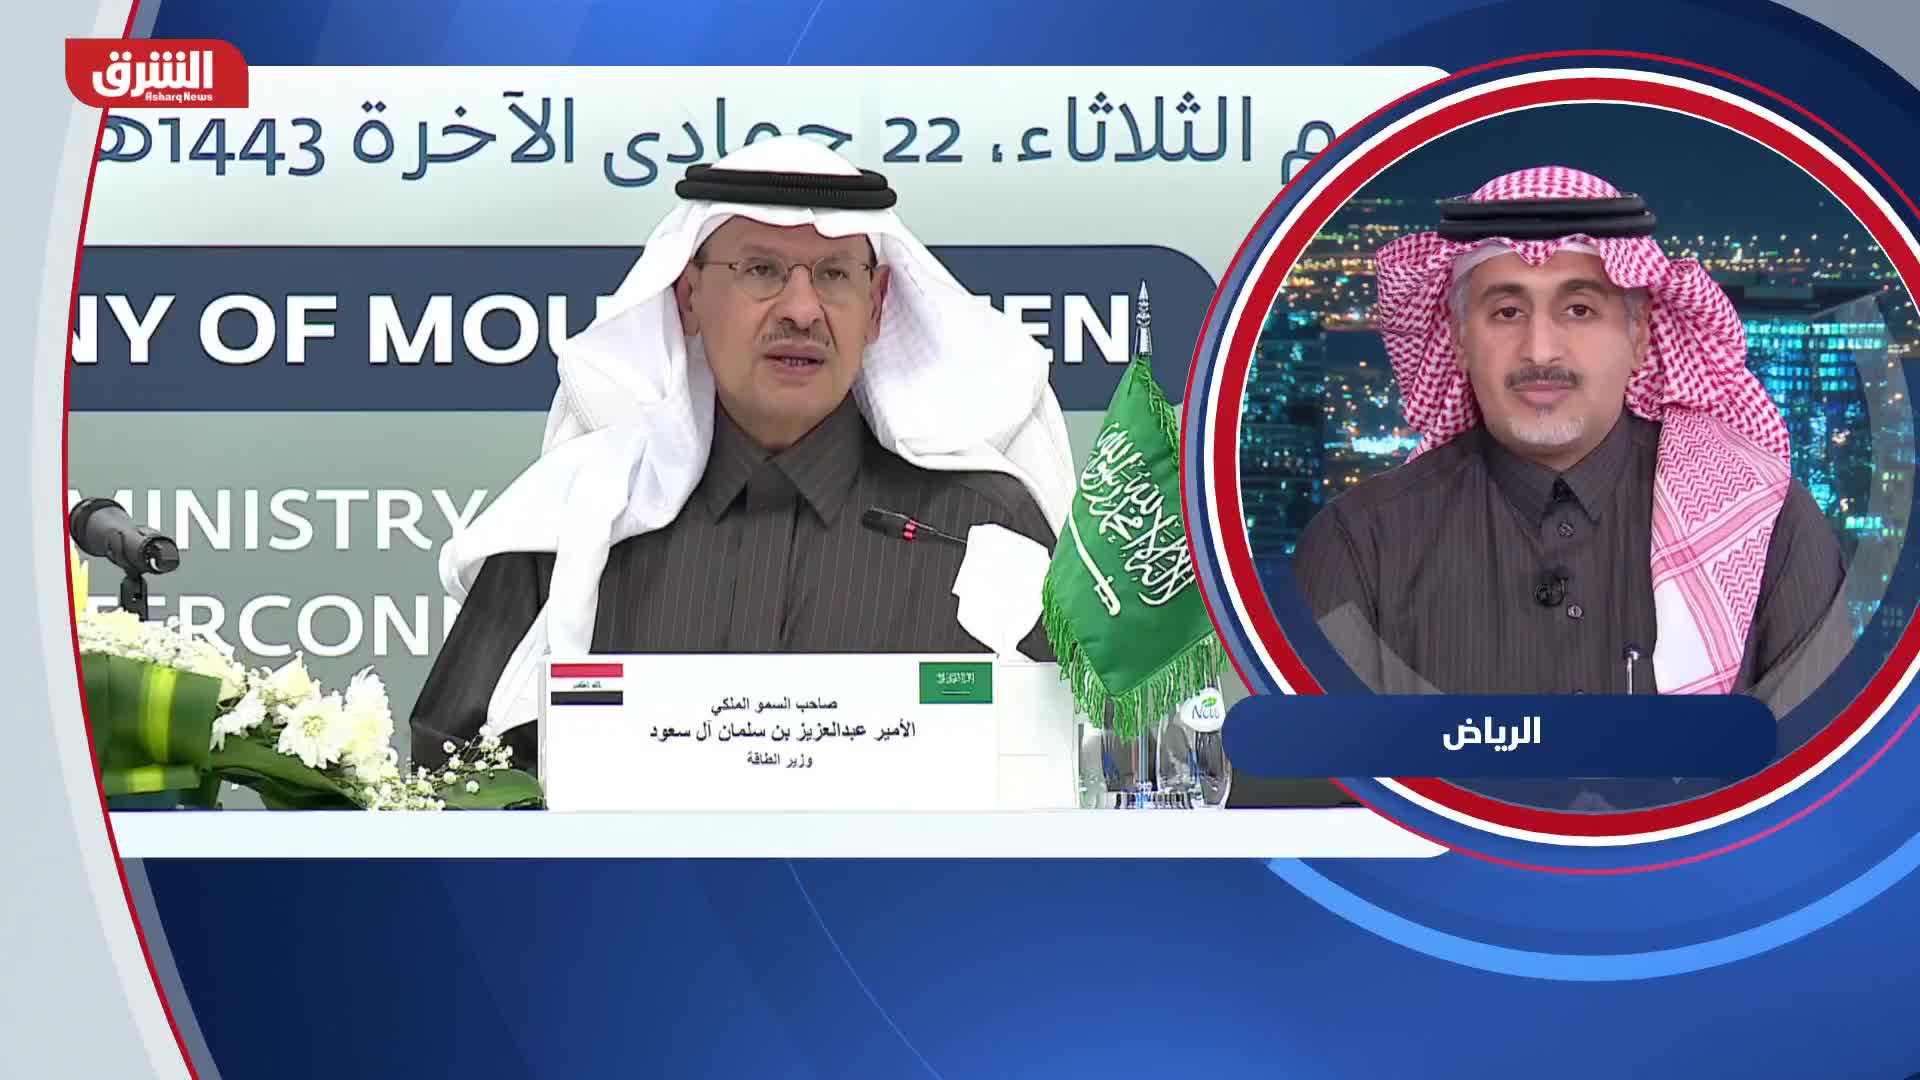 د. محمد مكني: الربط الكهربائي بين العراق والسعودية سيحقق مكاسب كبيرة للبلدين